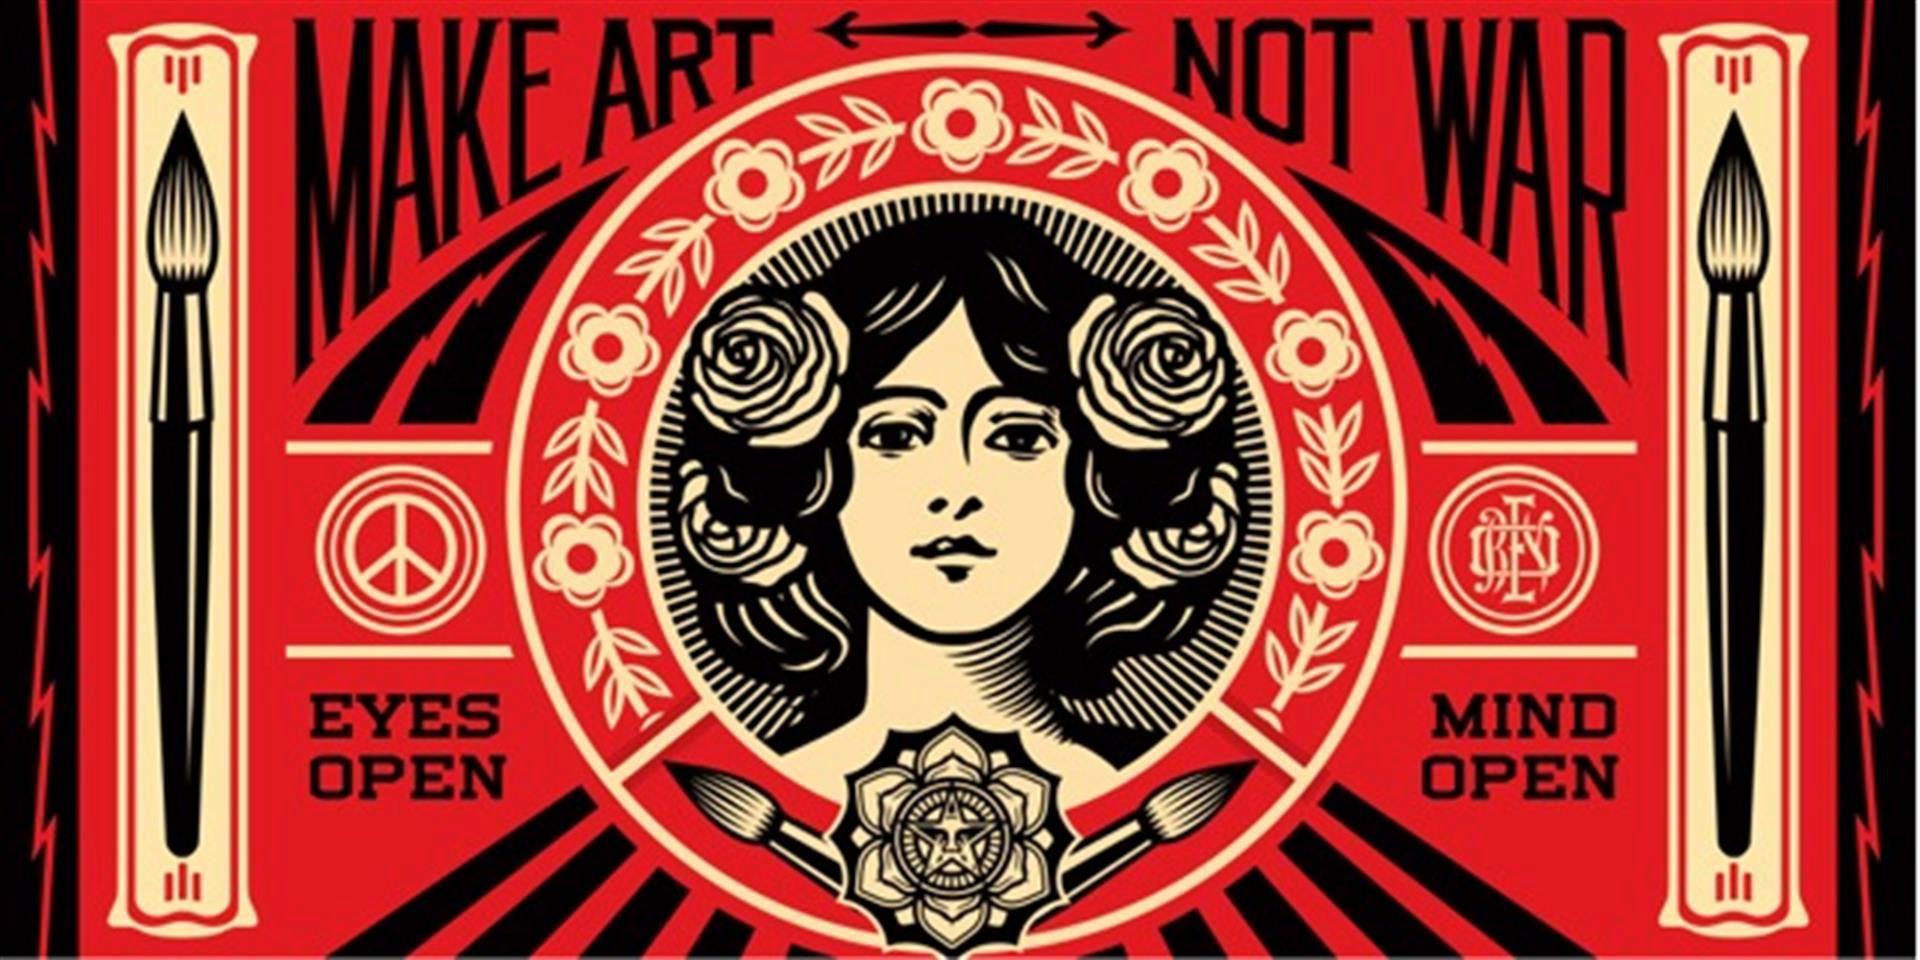 Make Art Not War By Shepard Fairey Street